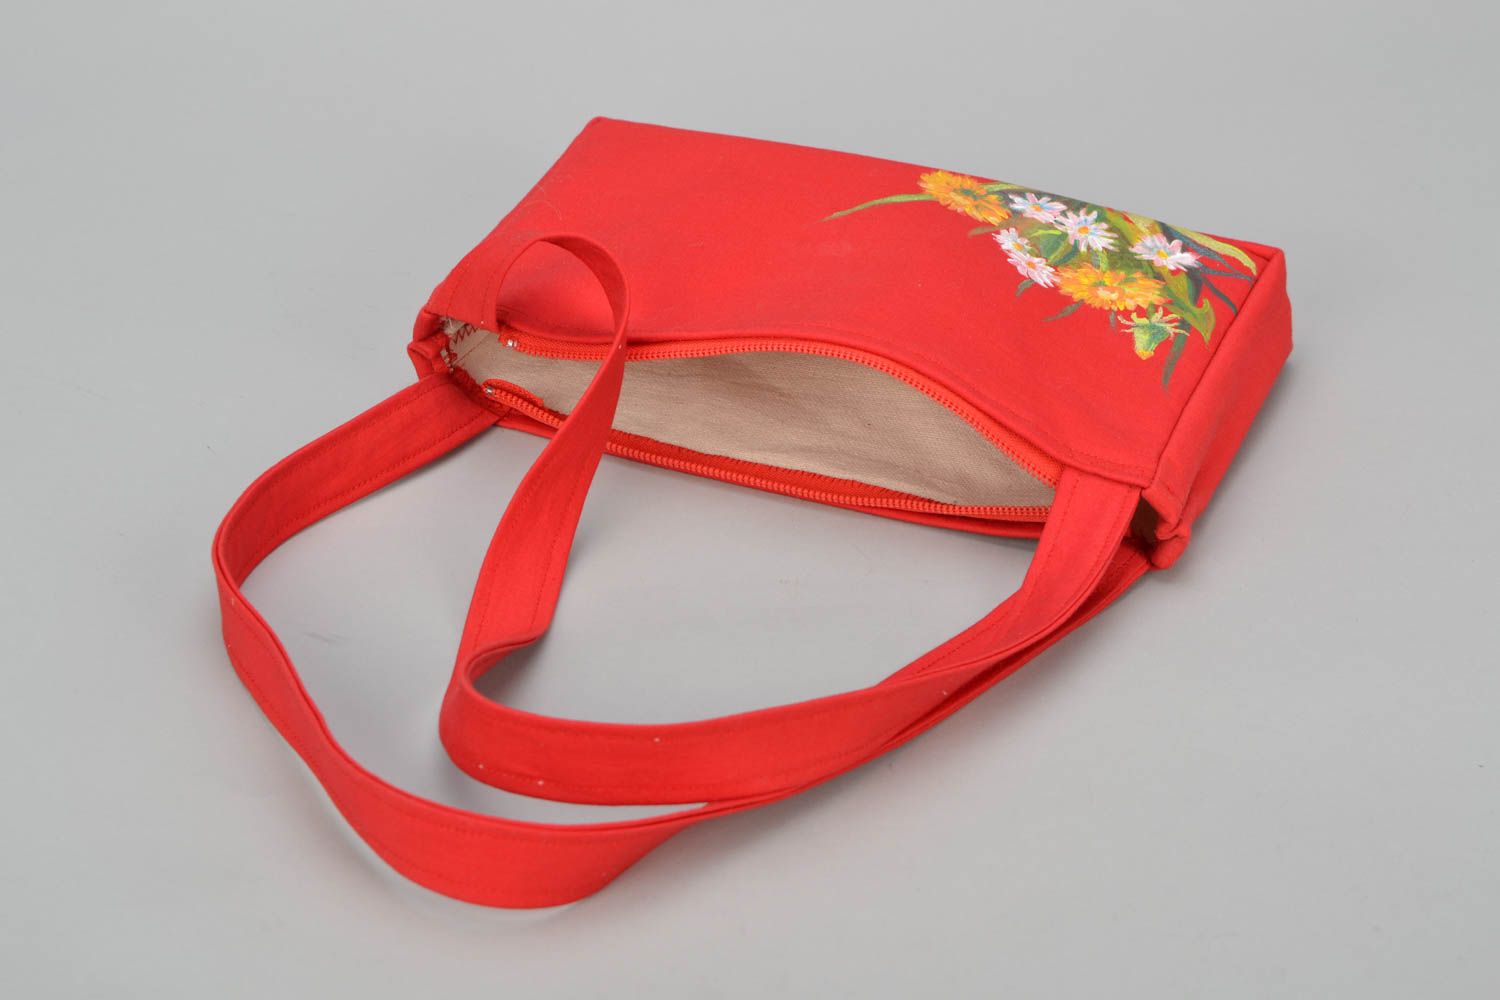 Textil Handtasche in Rot  foto 5